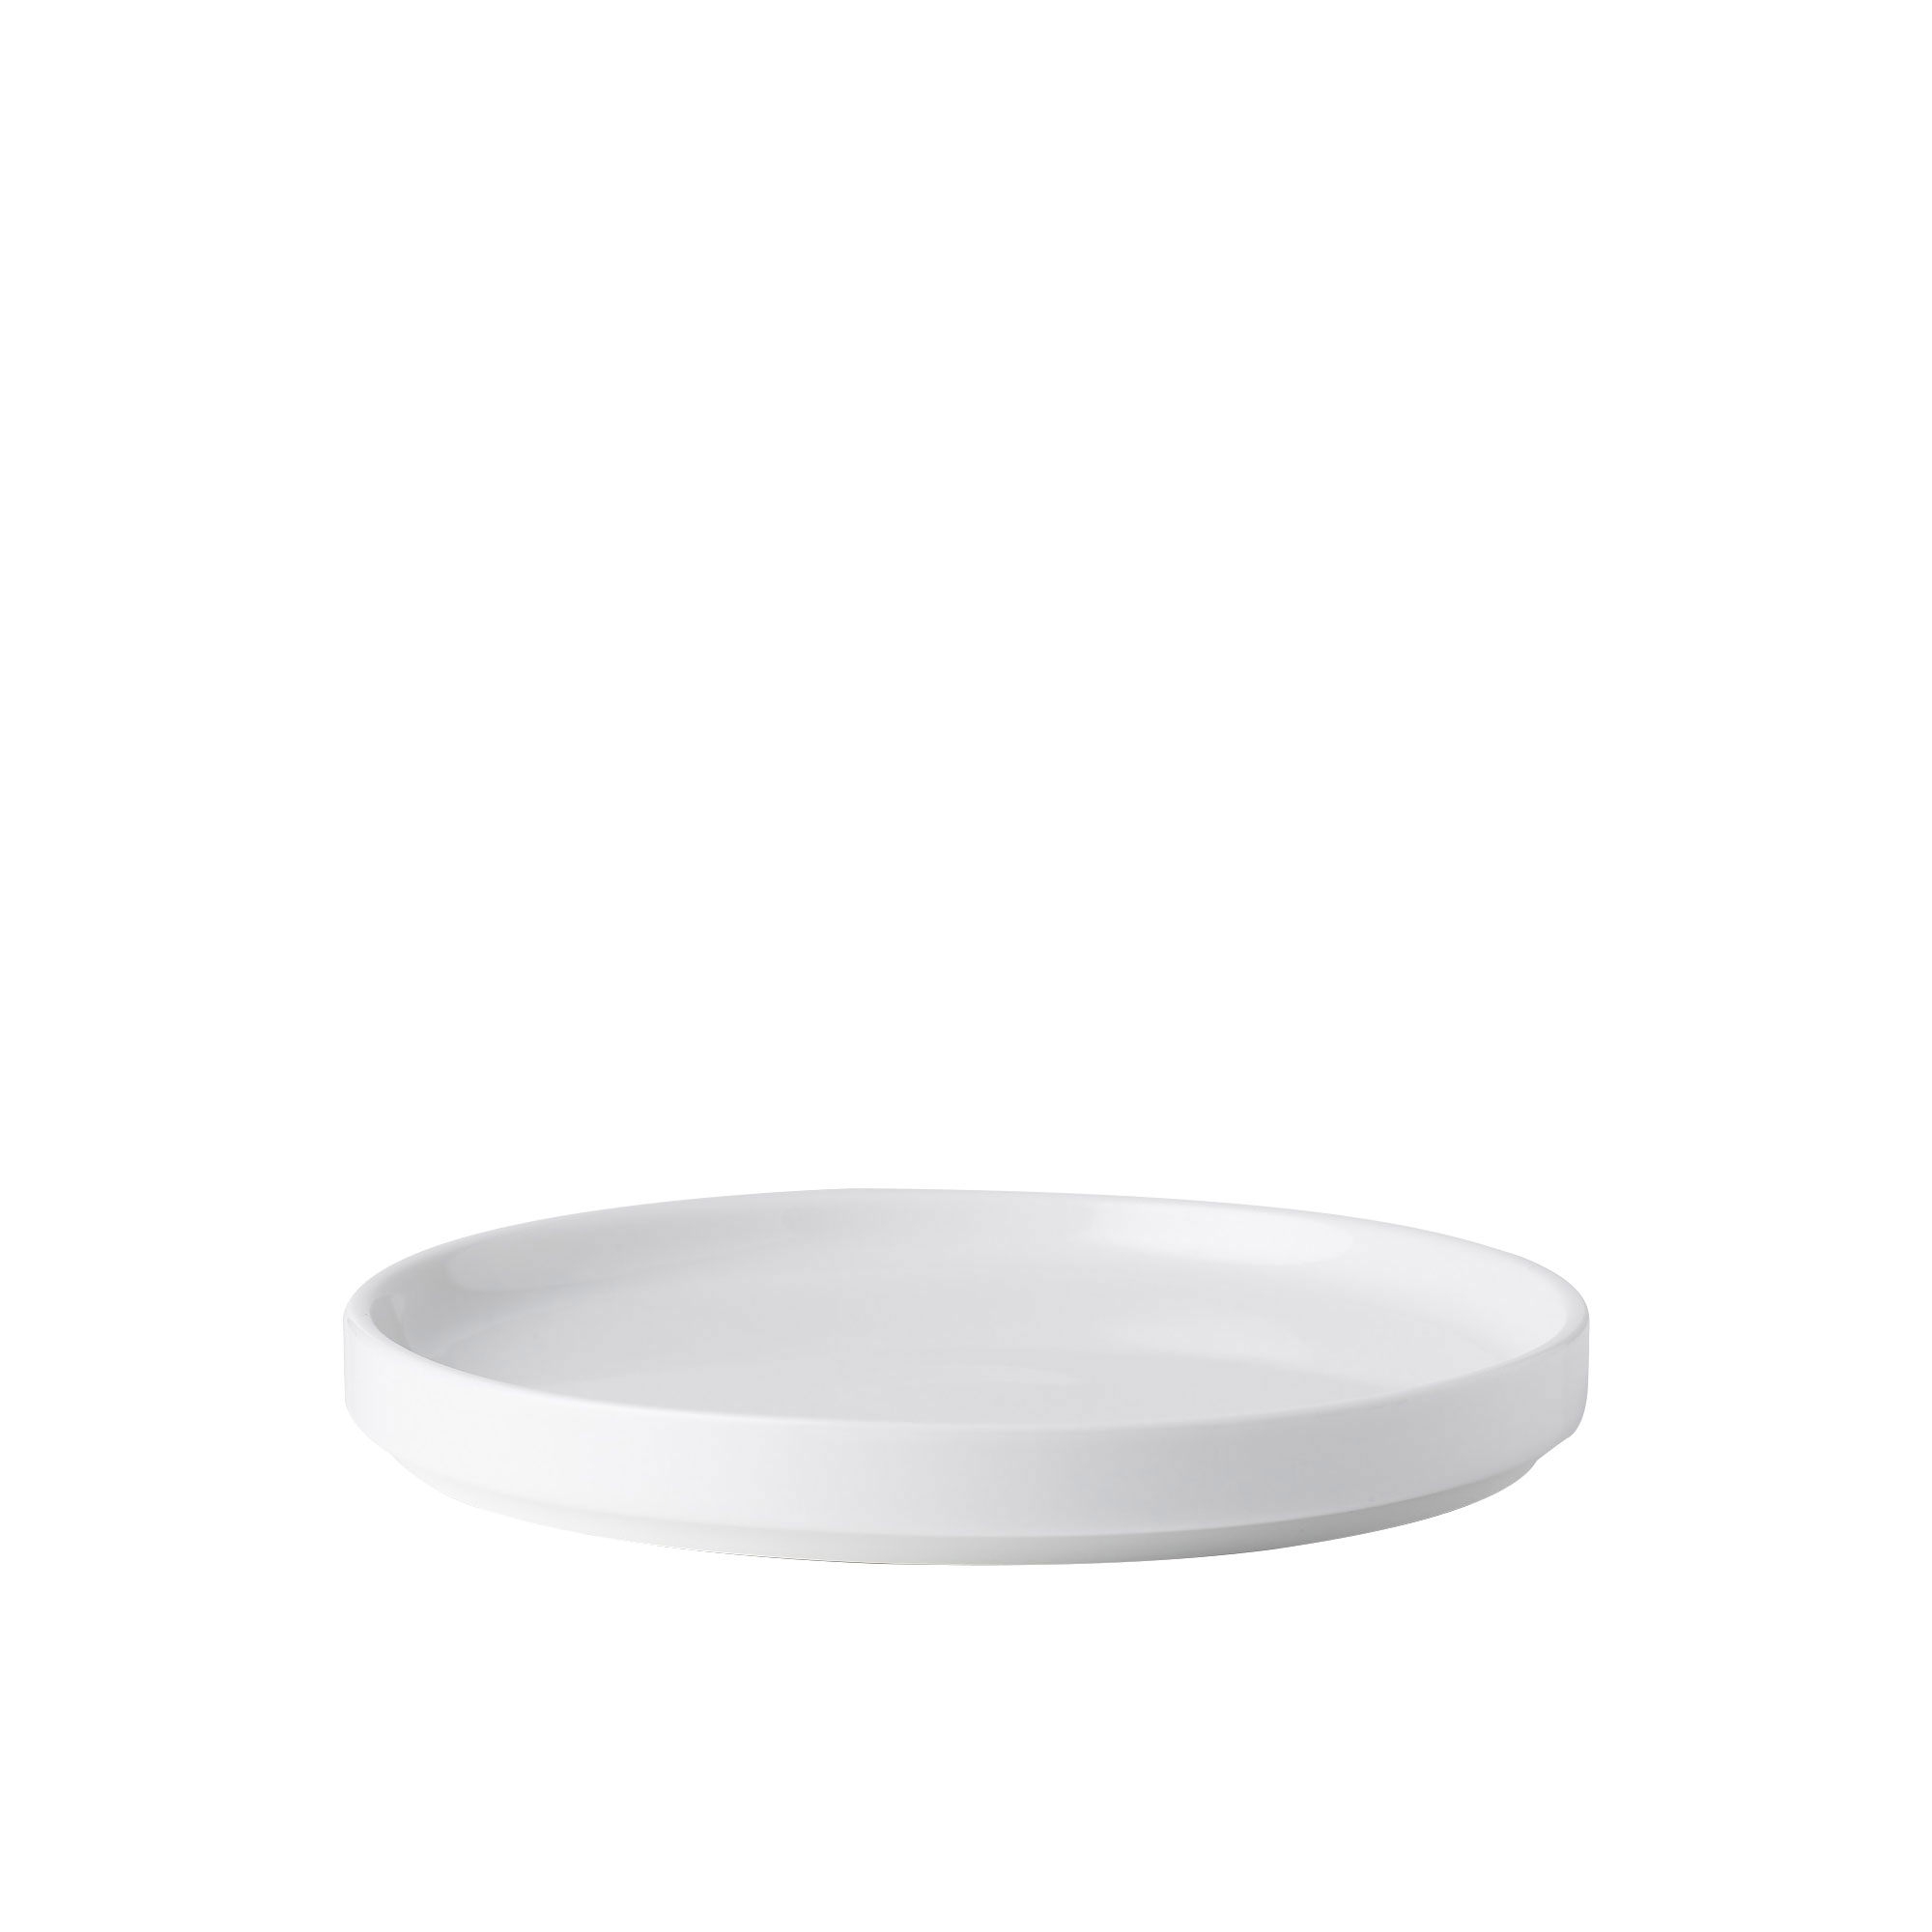 Noritake Stax White Entree Plate Set of 4 Image 2